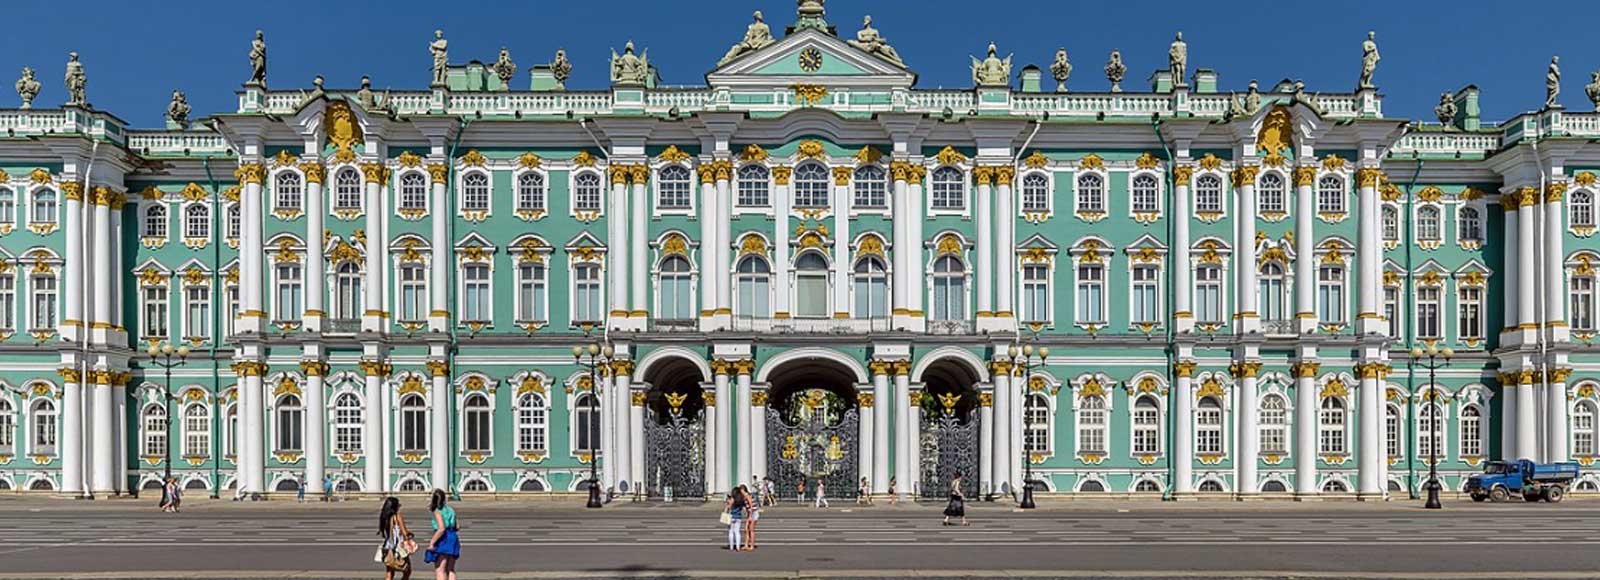 Ofertas de Traslados en San Petersburgo. Traslados económicos en San Petersburgo 